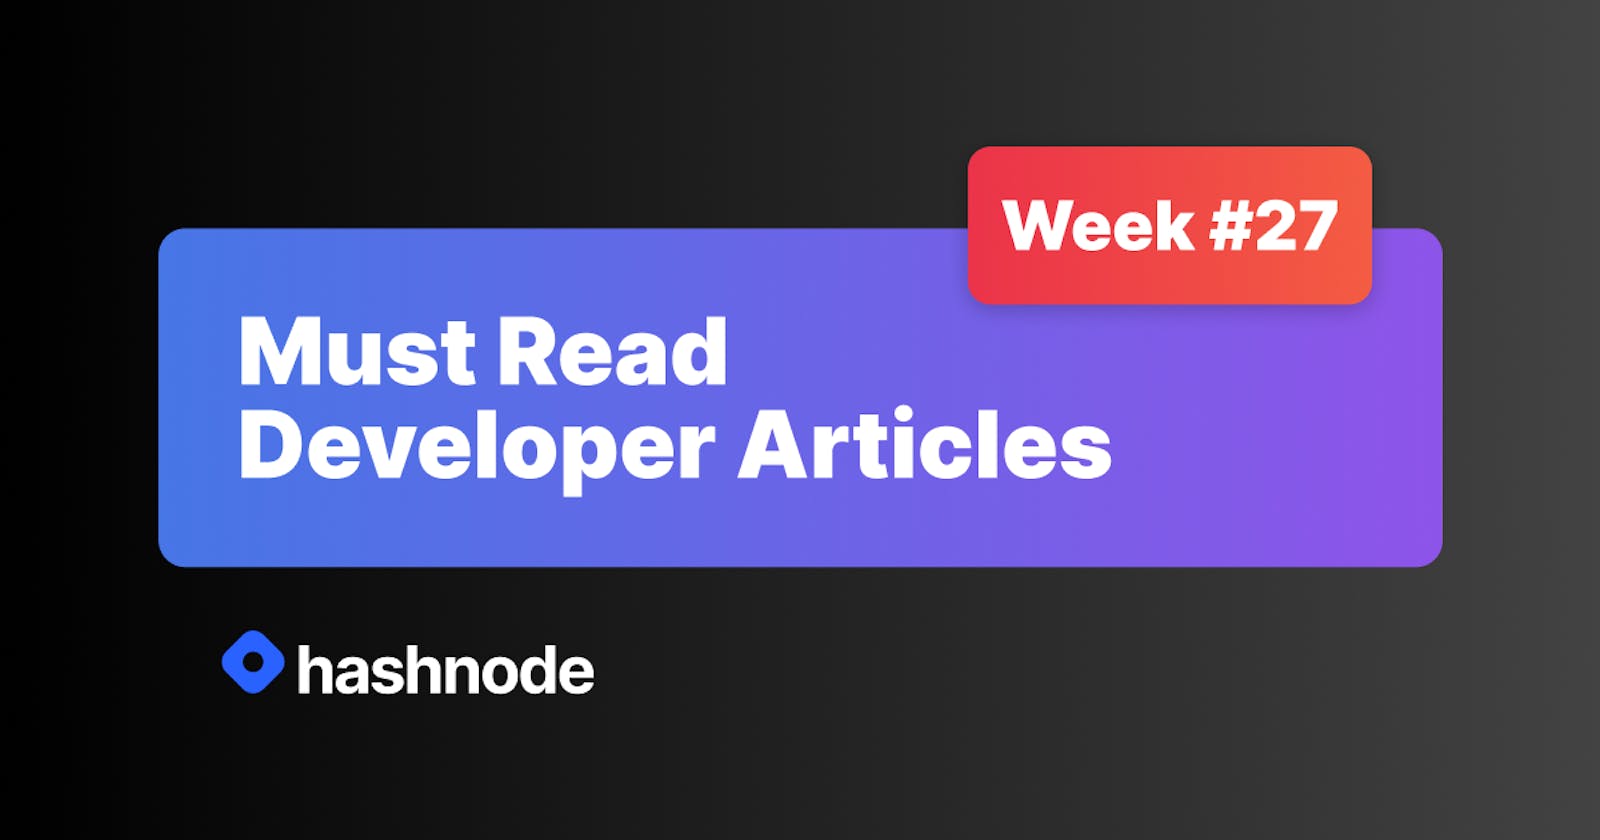 Must Read Developer Articles on Hashnode - #27